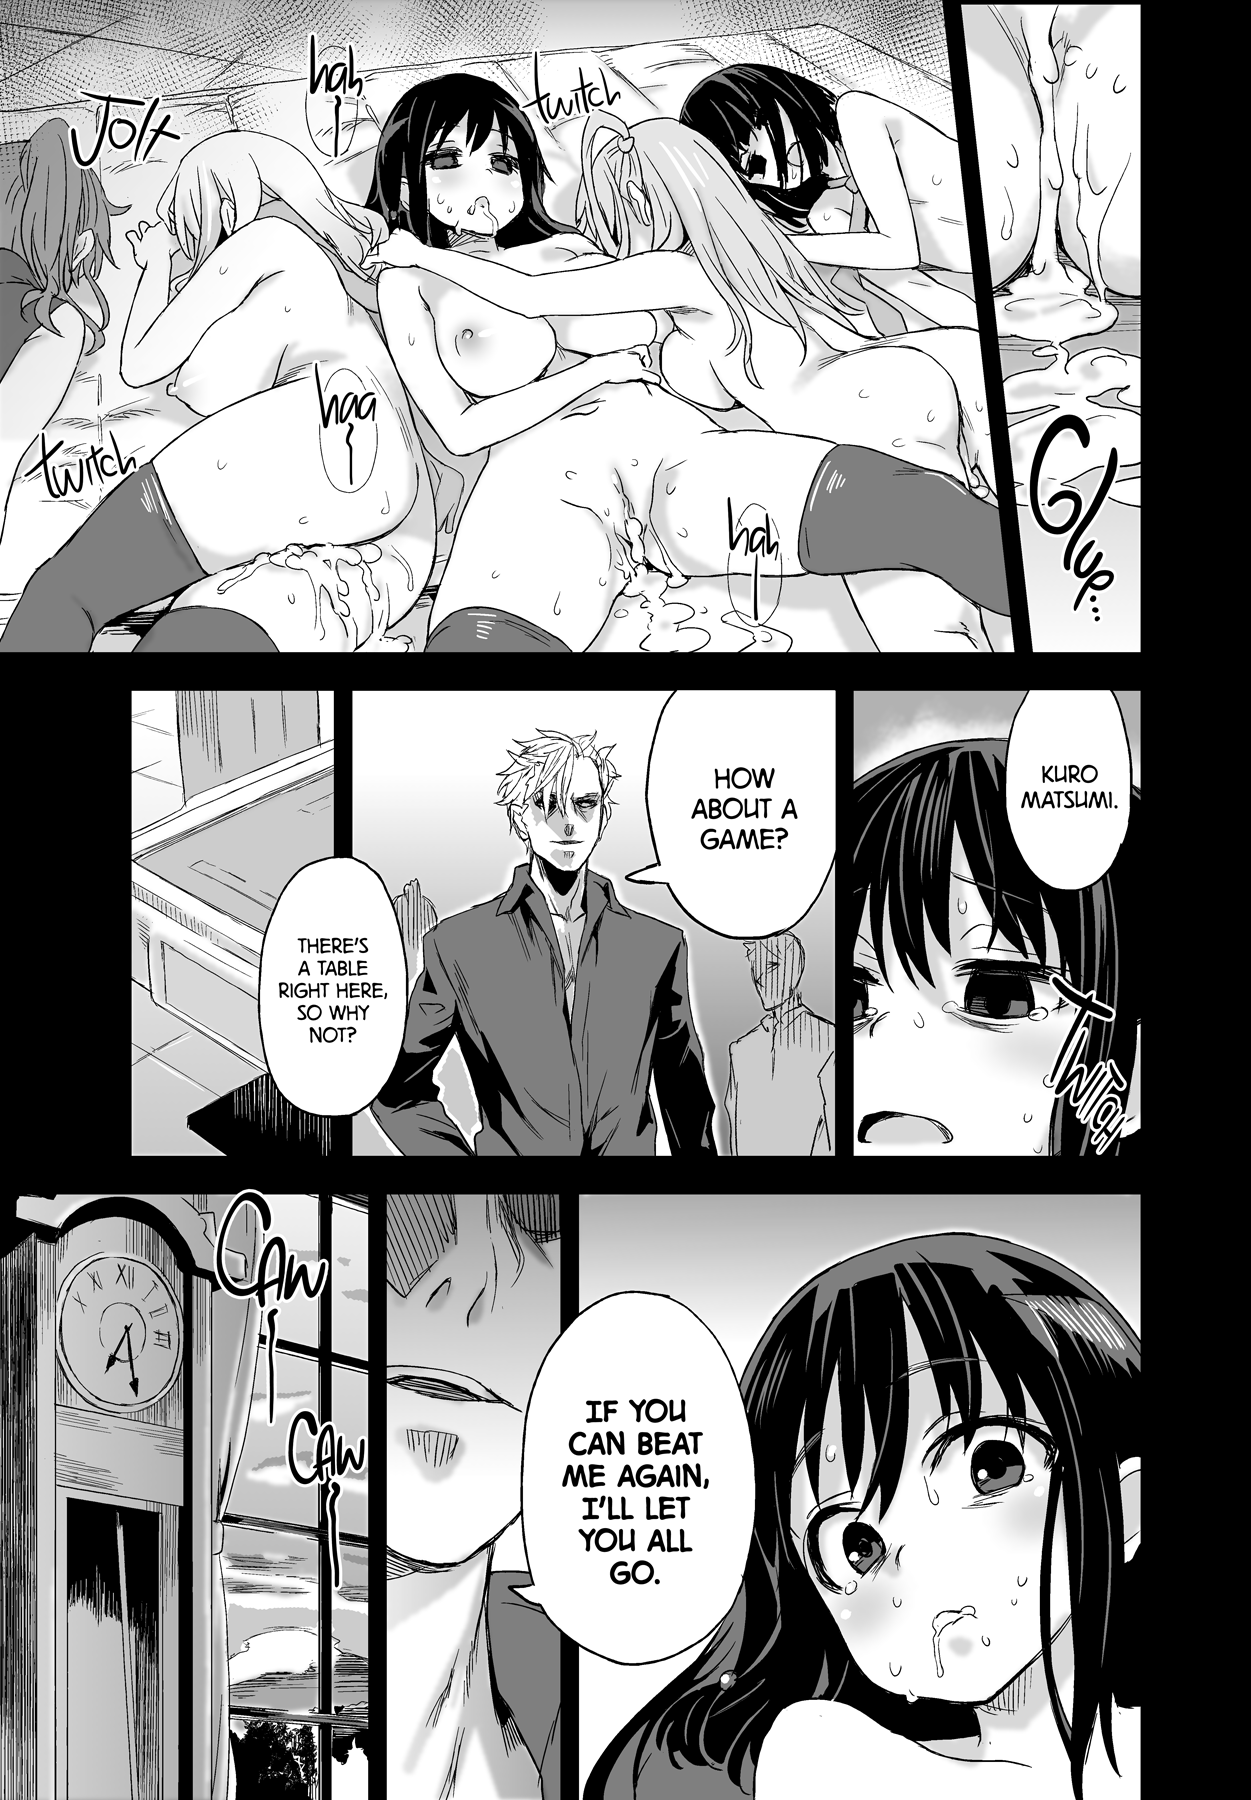 Victim Girls 13 - DRAGON SLAYER hentai manga picture 38